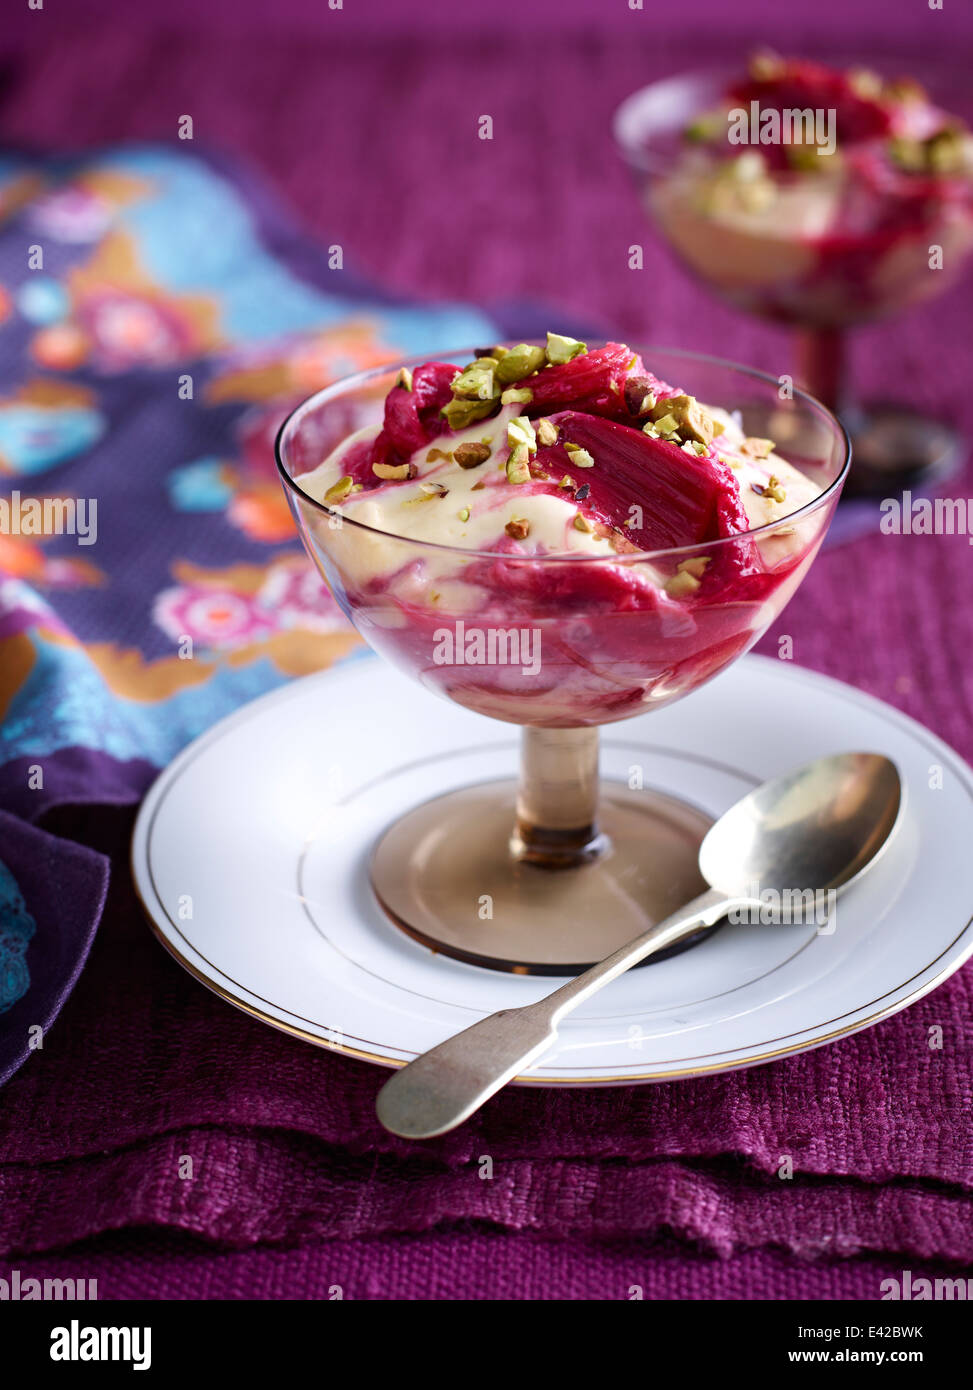 Stillleben mit Rhabarber-Pudding-dessert Stockfoto